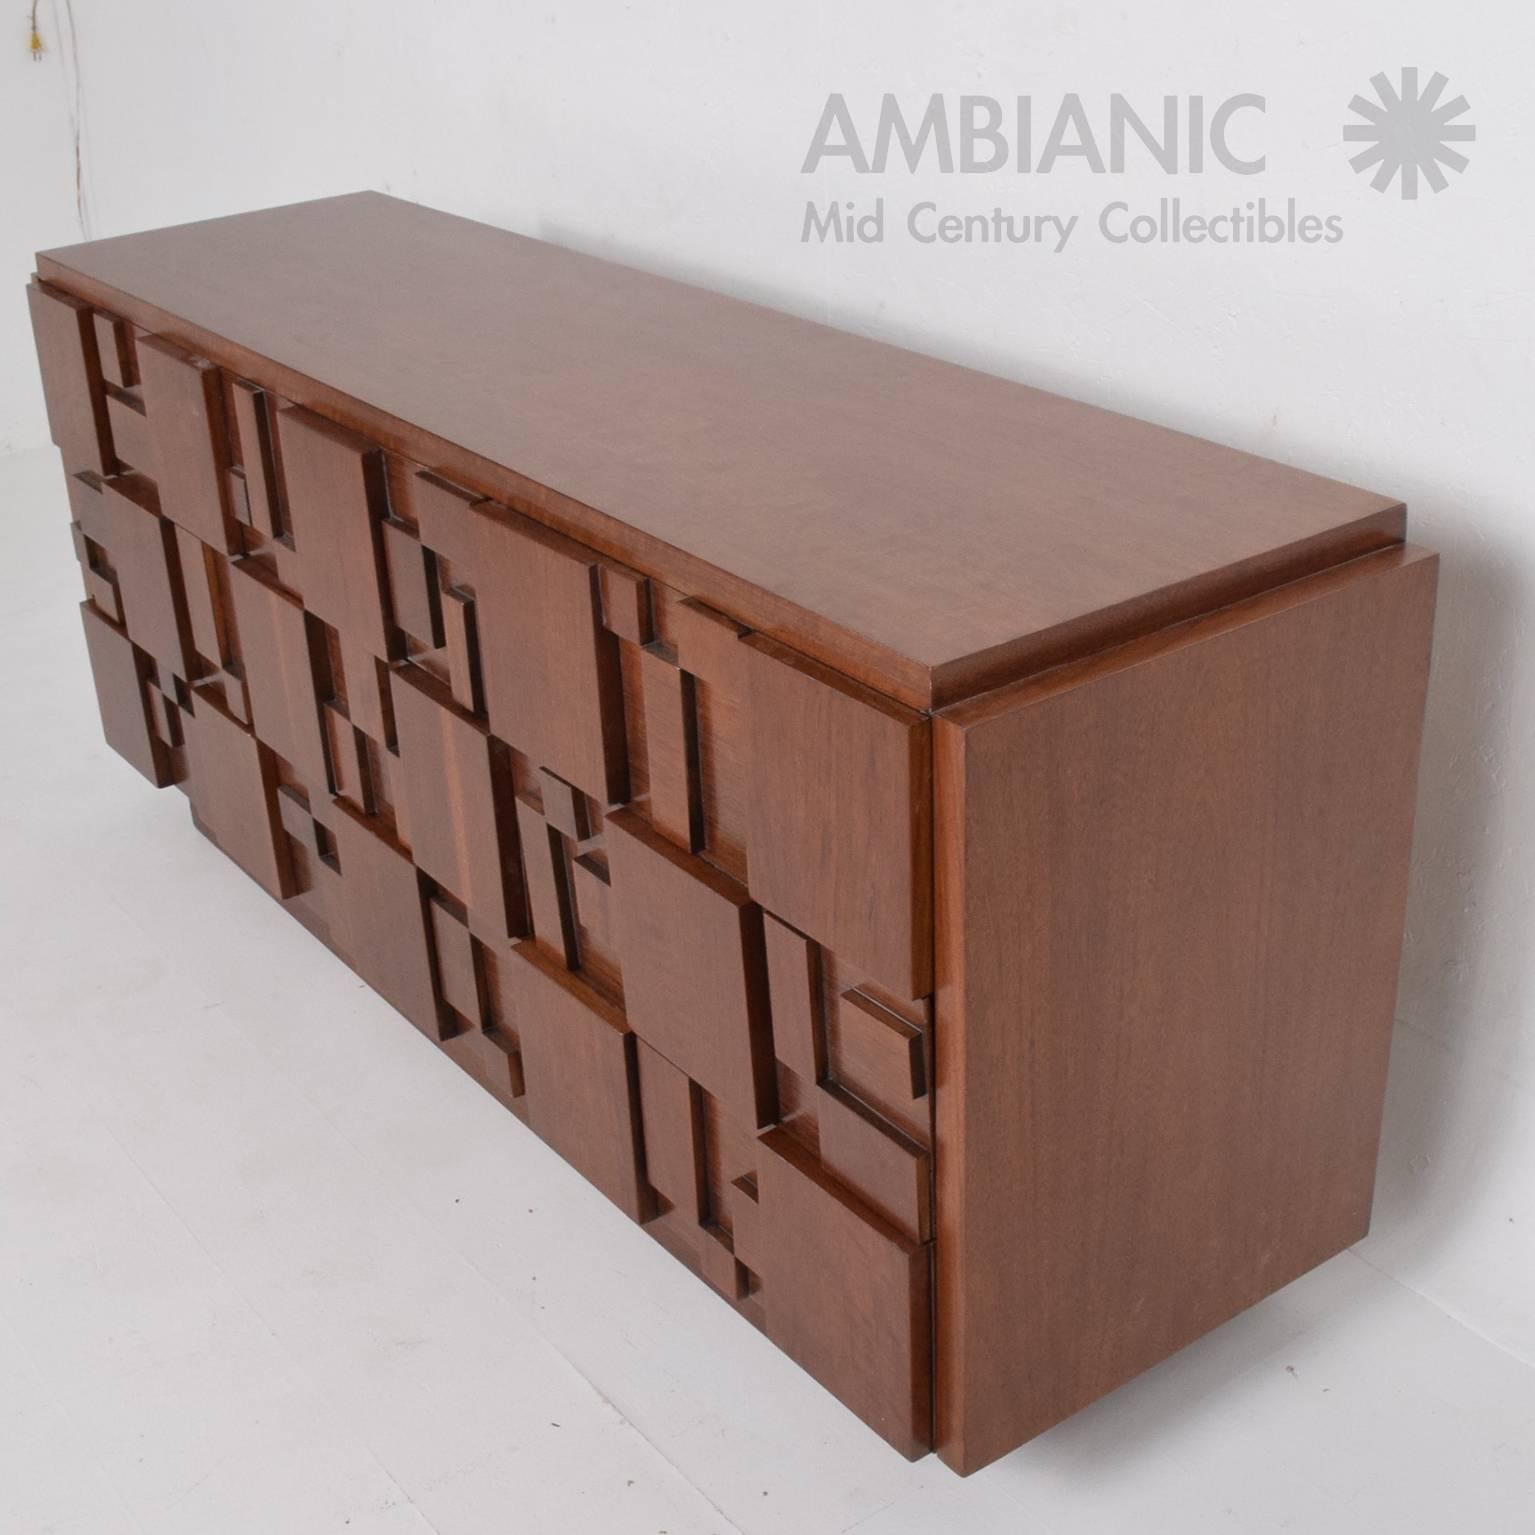 American Mid-Century Modern Lane Brutalist Dresser in Excellent Restored Condition